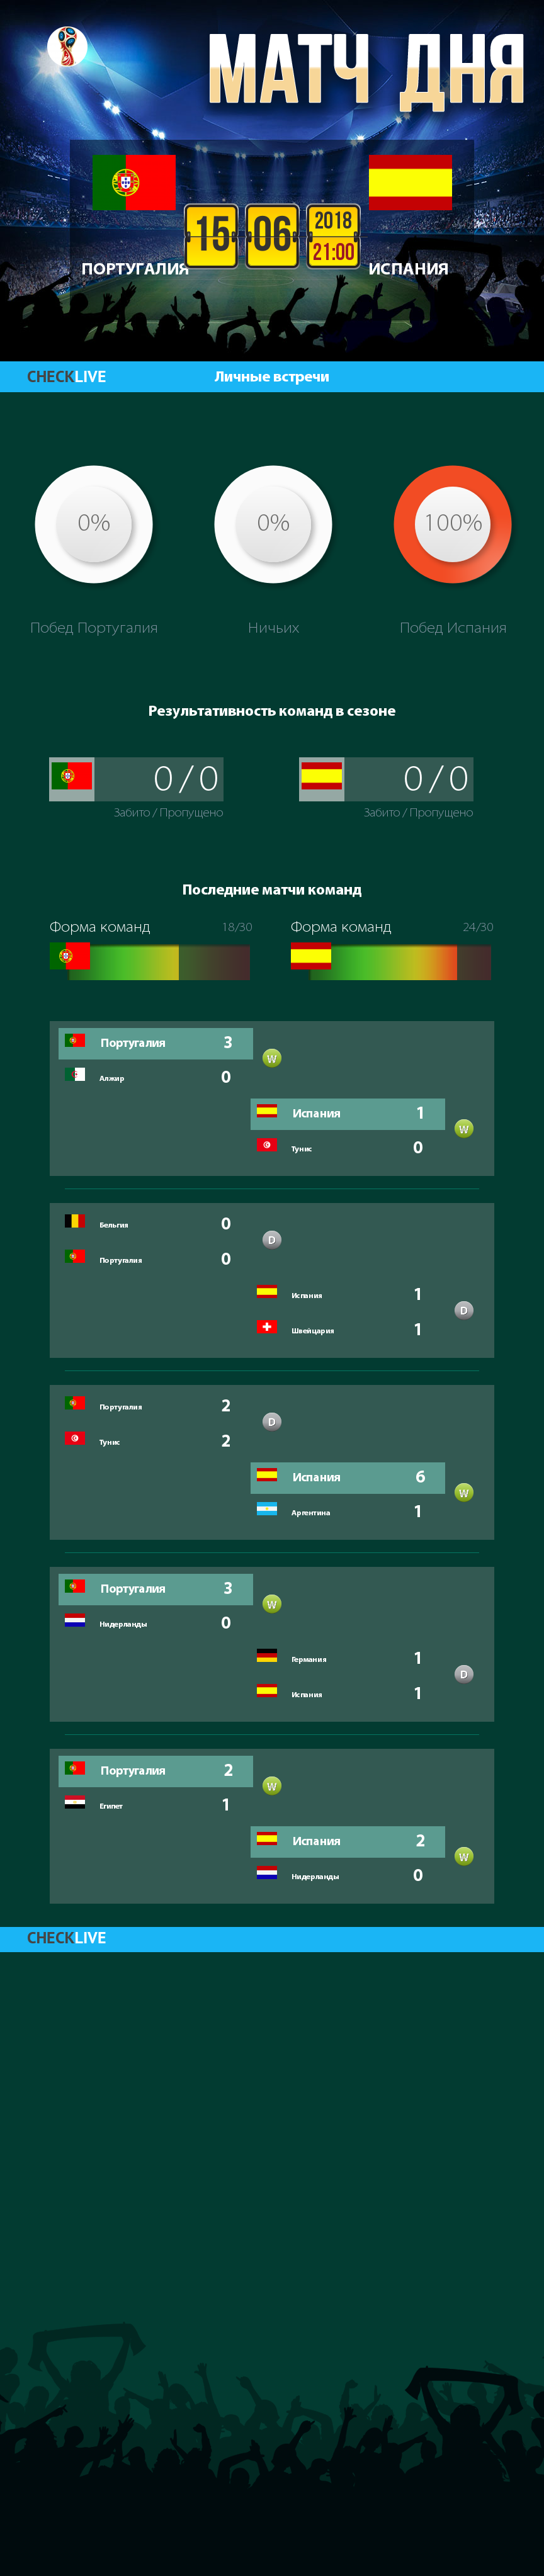 Инфографика Португалия и Испания матч дня 15.06.2018